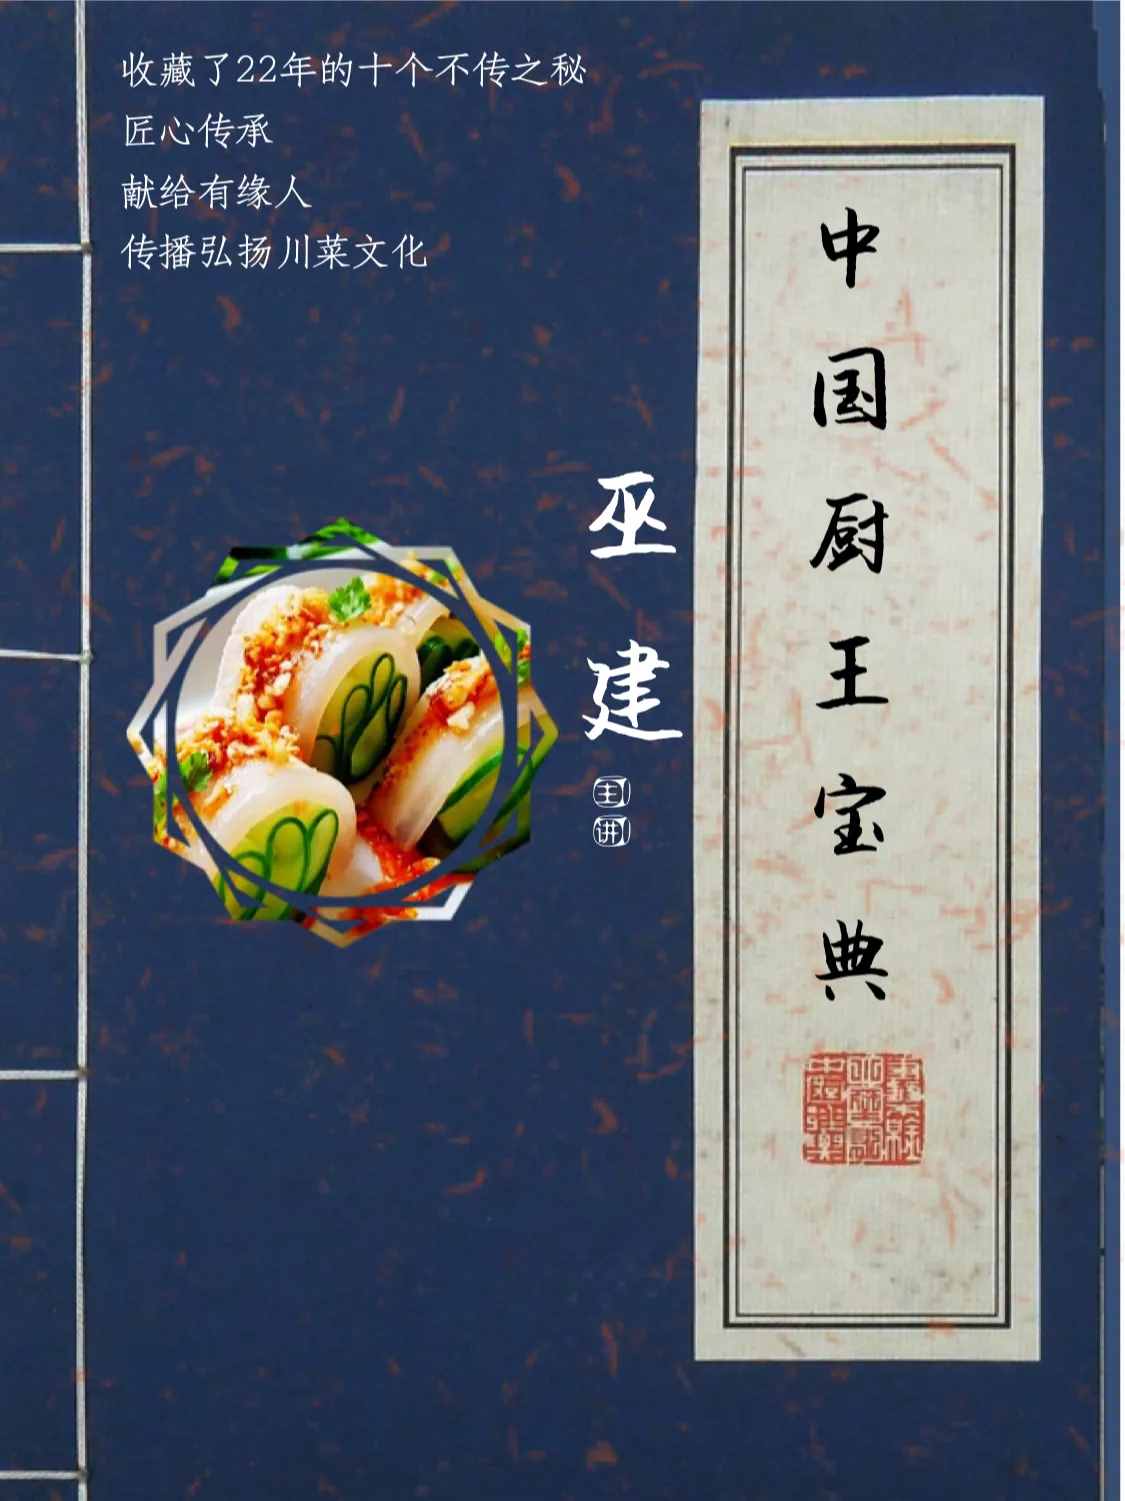 一代名菜“麻婆豆腐”的故事，据说从100多年前同治元年开始的